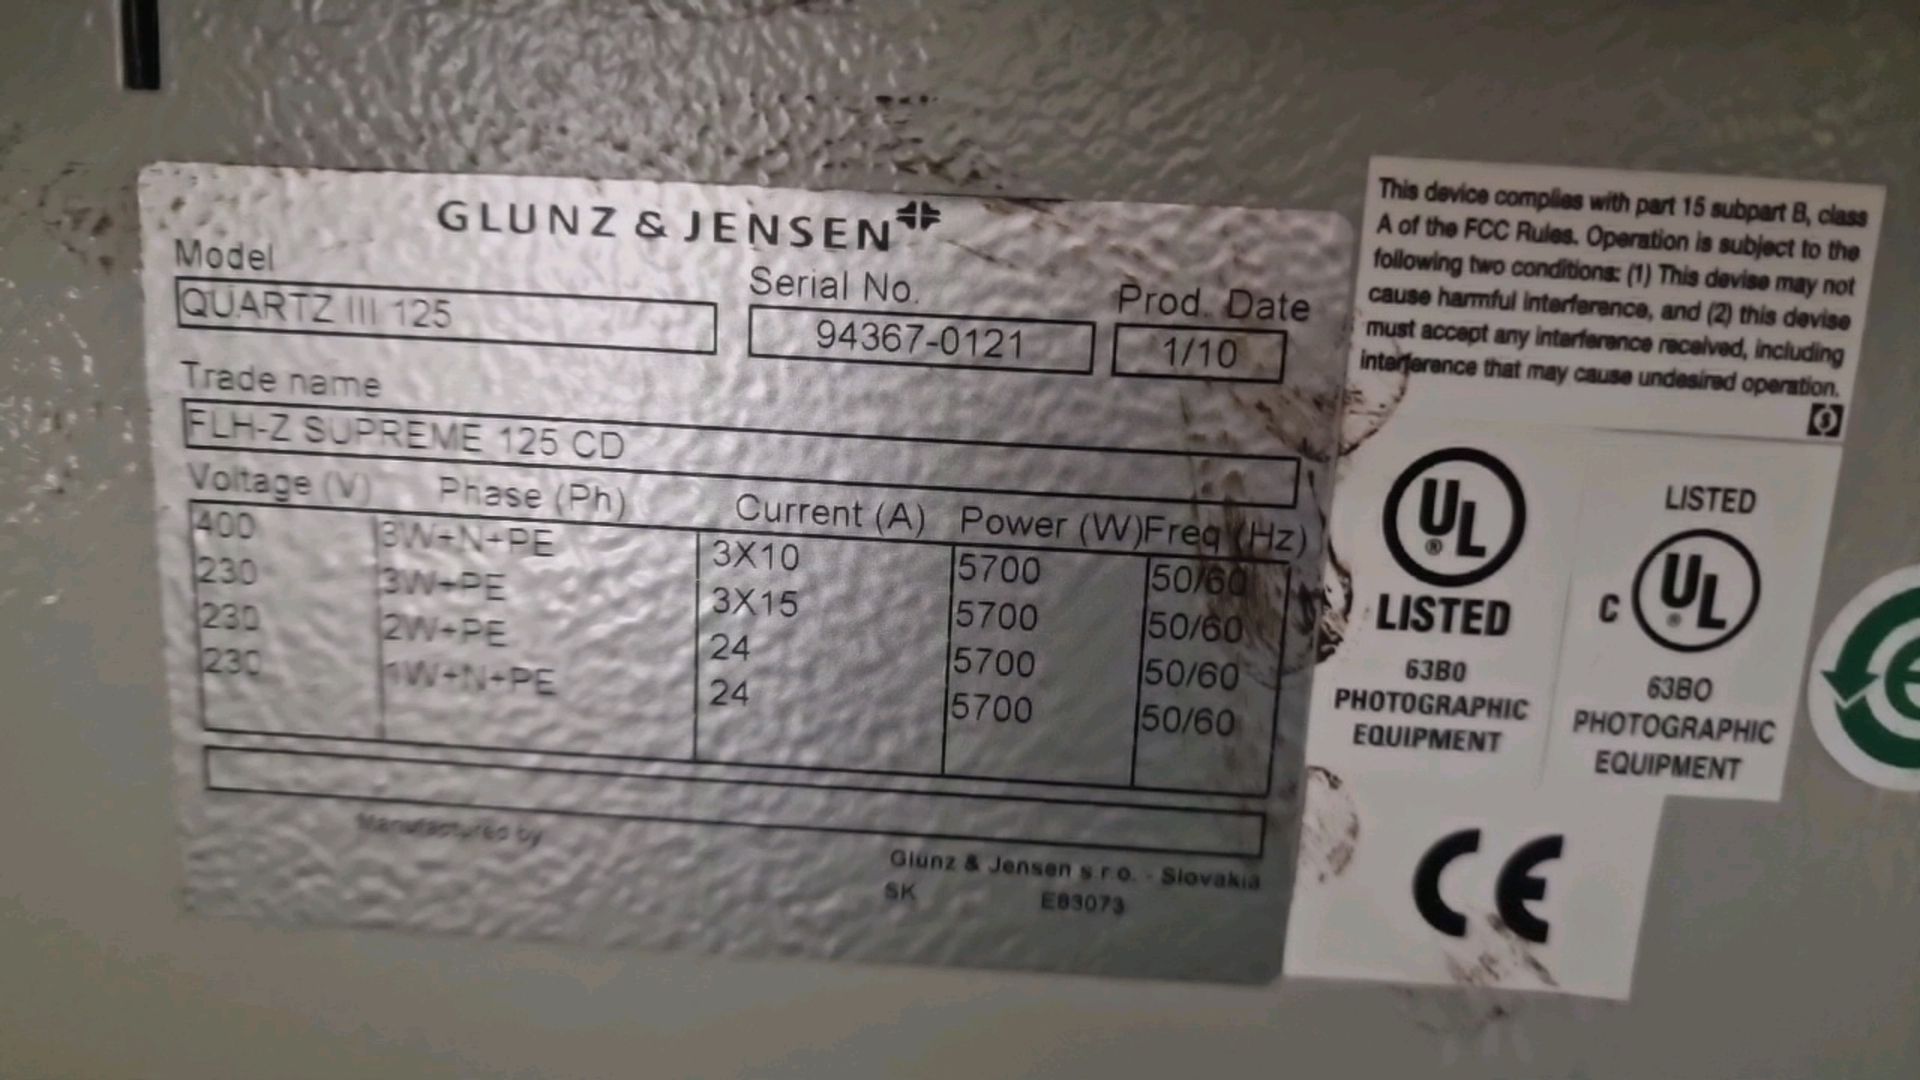 2010 Glunz & Jensen Quartz 111 125 Thermal Plate Processer - Bild 4 aus 9